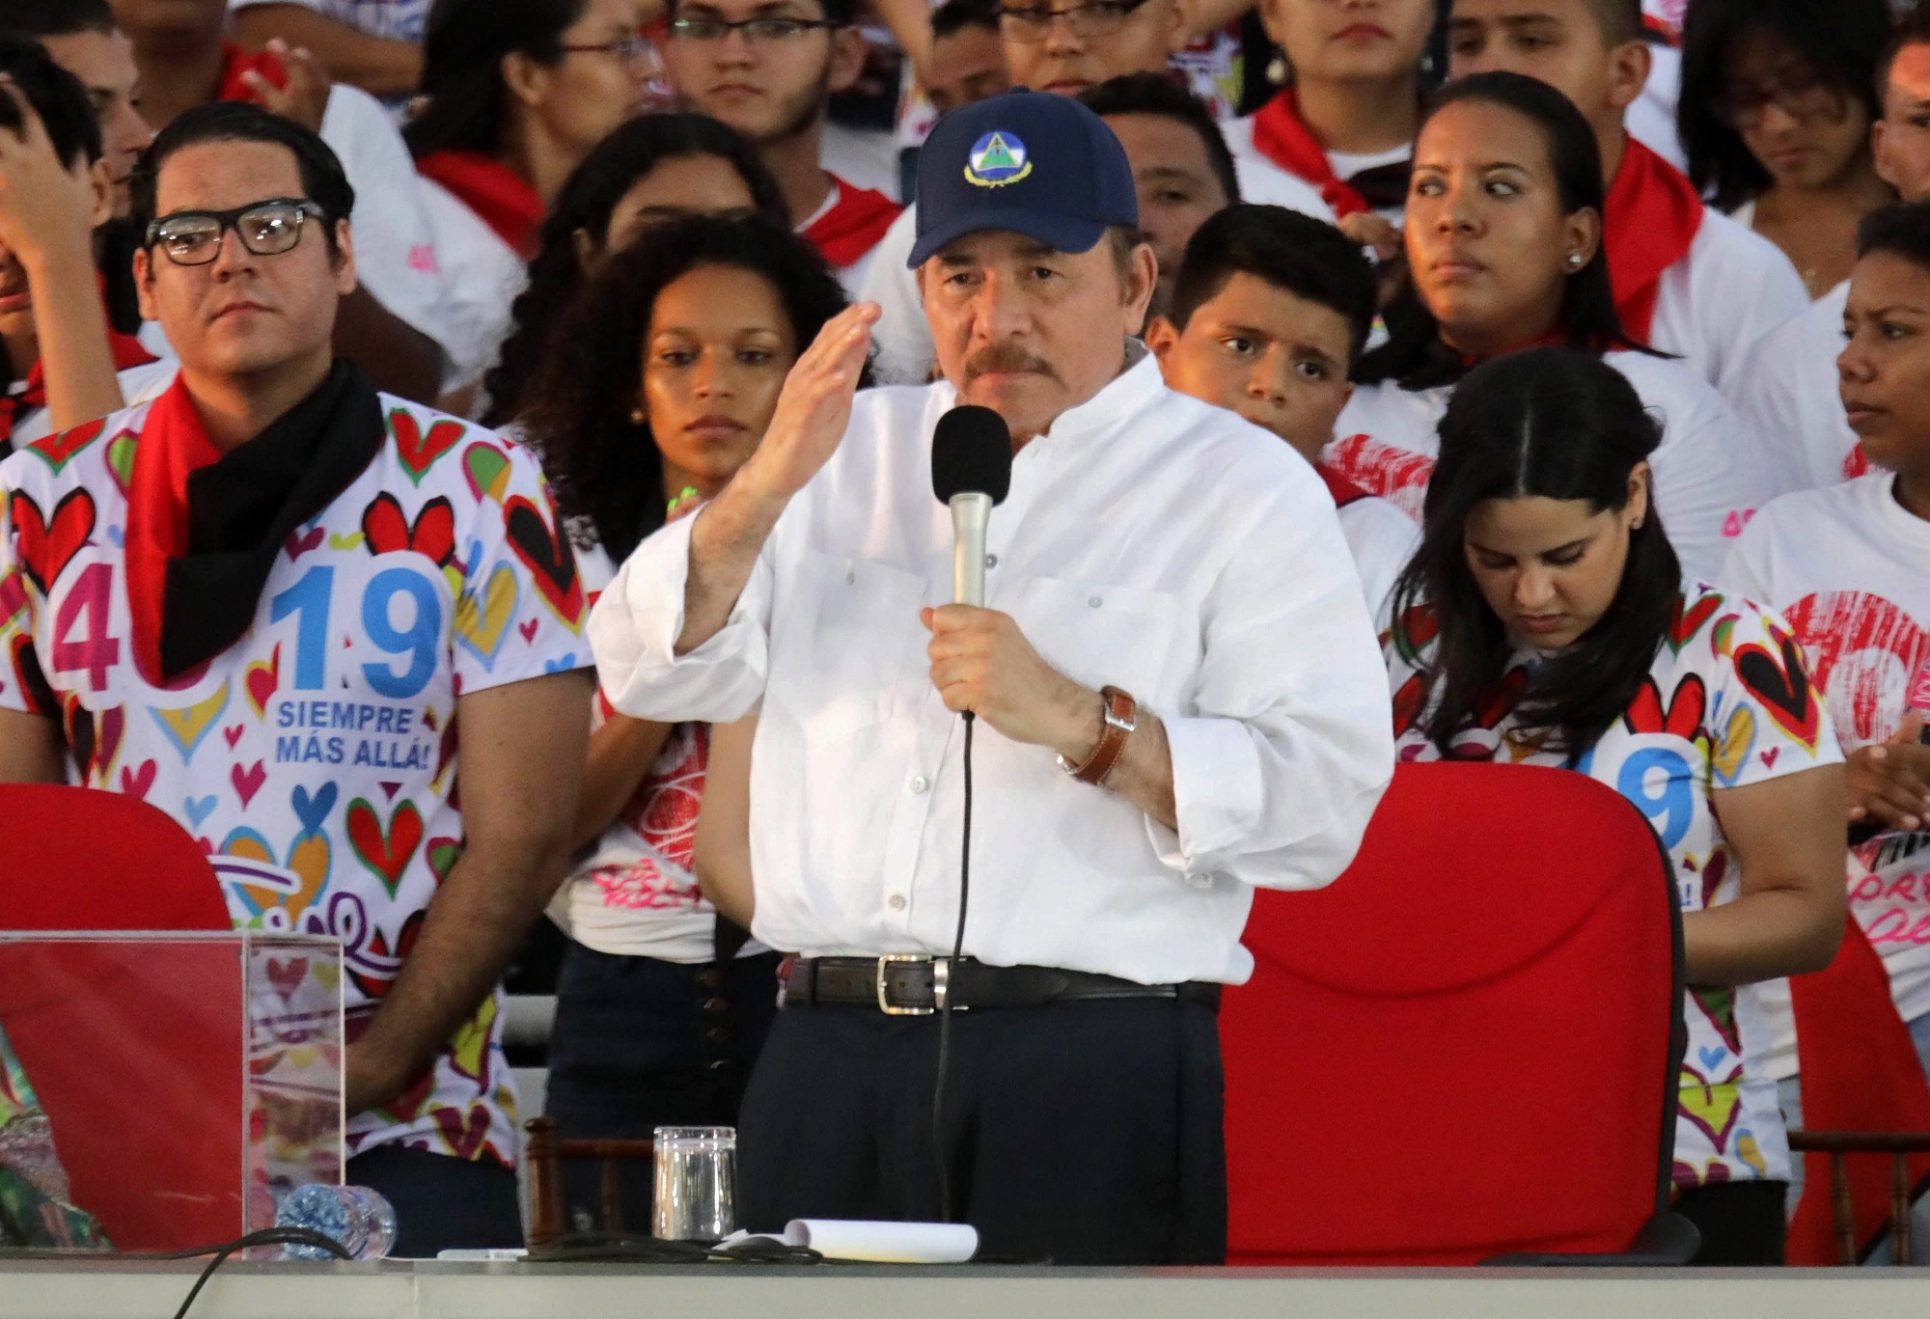 Gobierno tilda de “hipócrita” a régimen de Daniel Ortega, ante acusaciones por muerte de nicaragüense